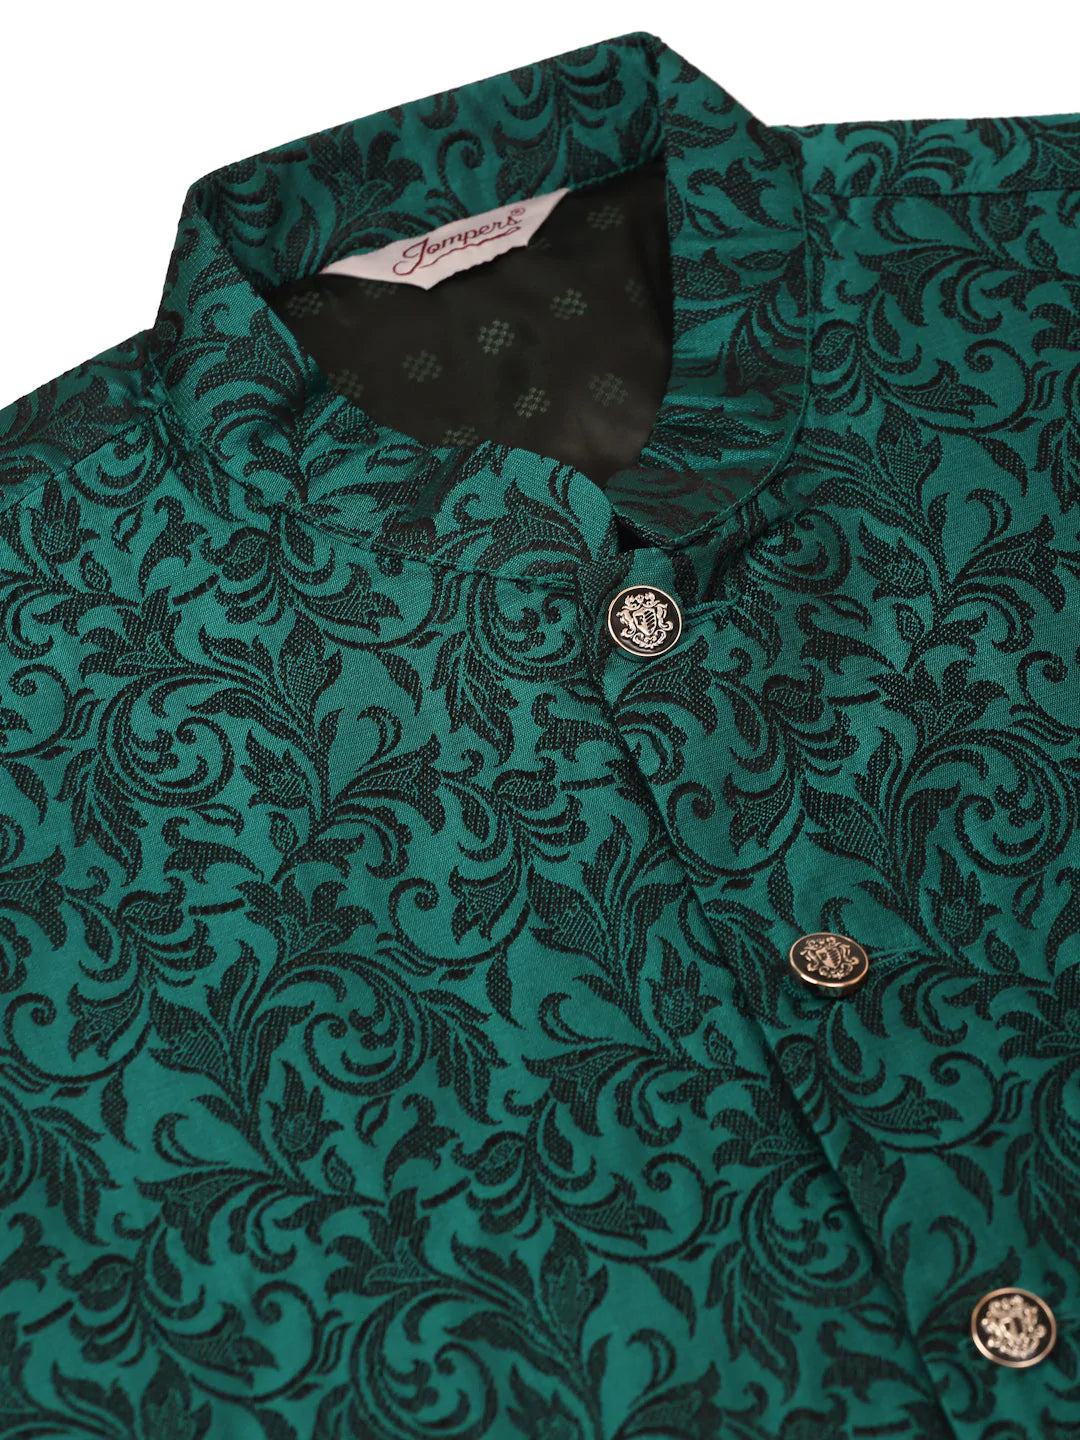 Men's Green Woven Design Nehru Jacket.( JOWC 4004 Green )